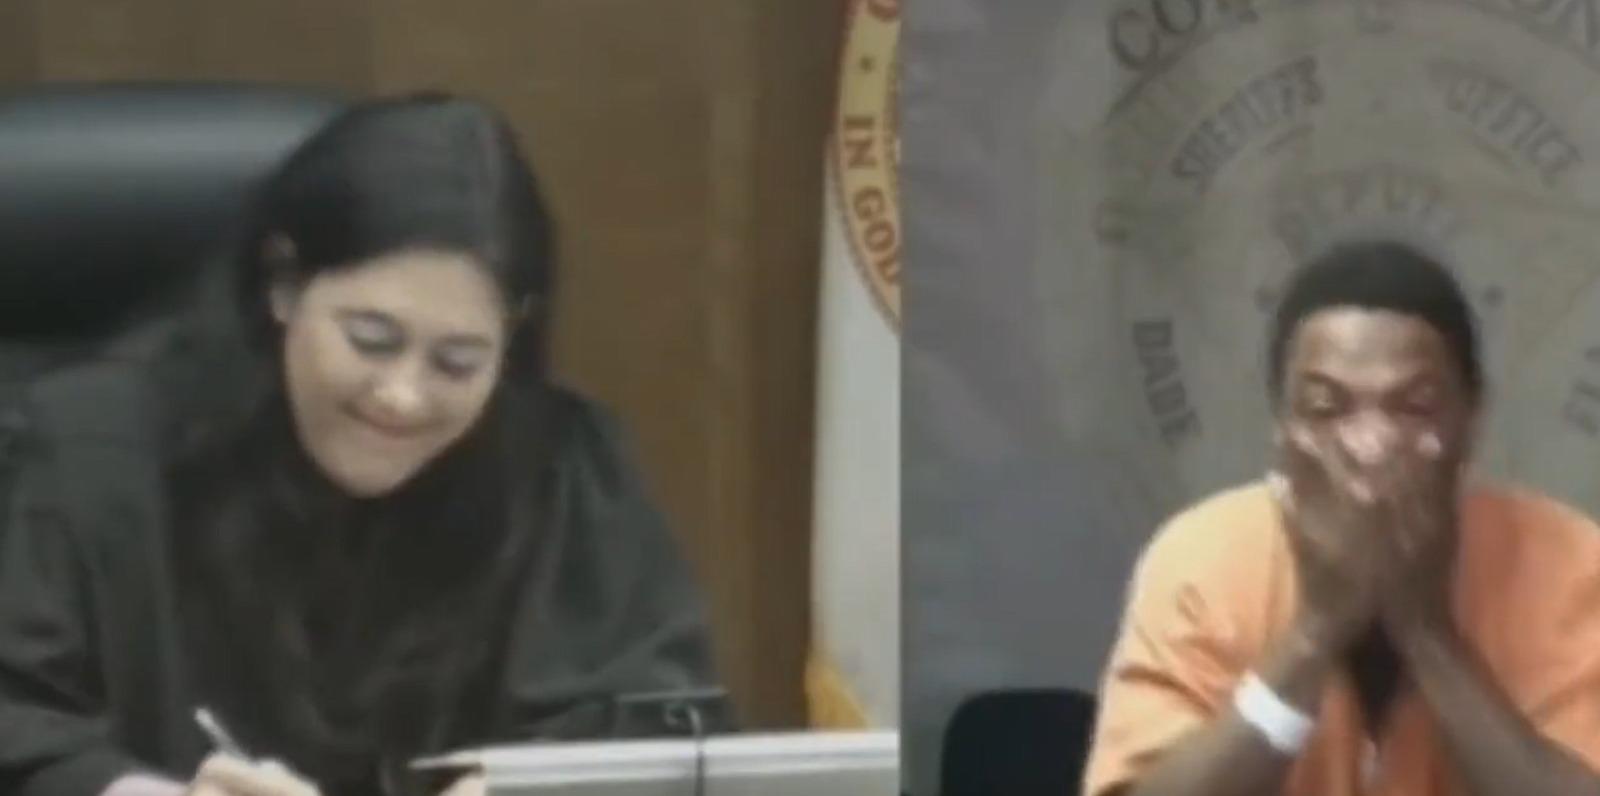 Video: Hombre llora en la corte al enterarse que jueza es su maestra de escuela